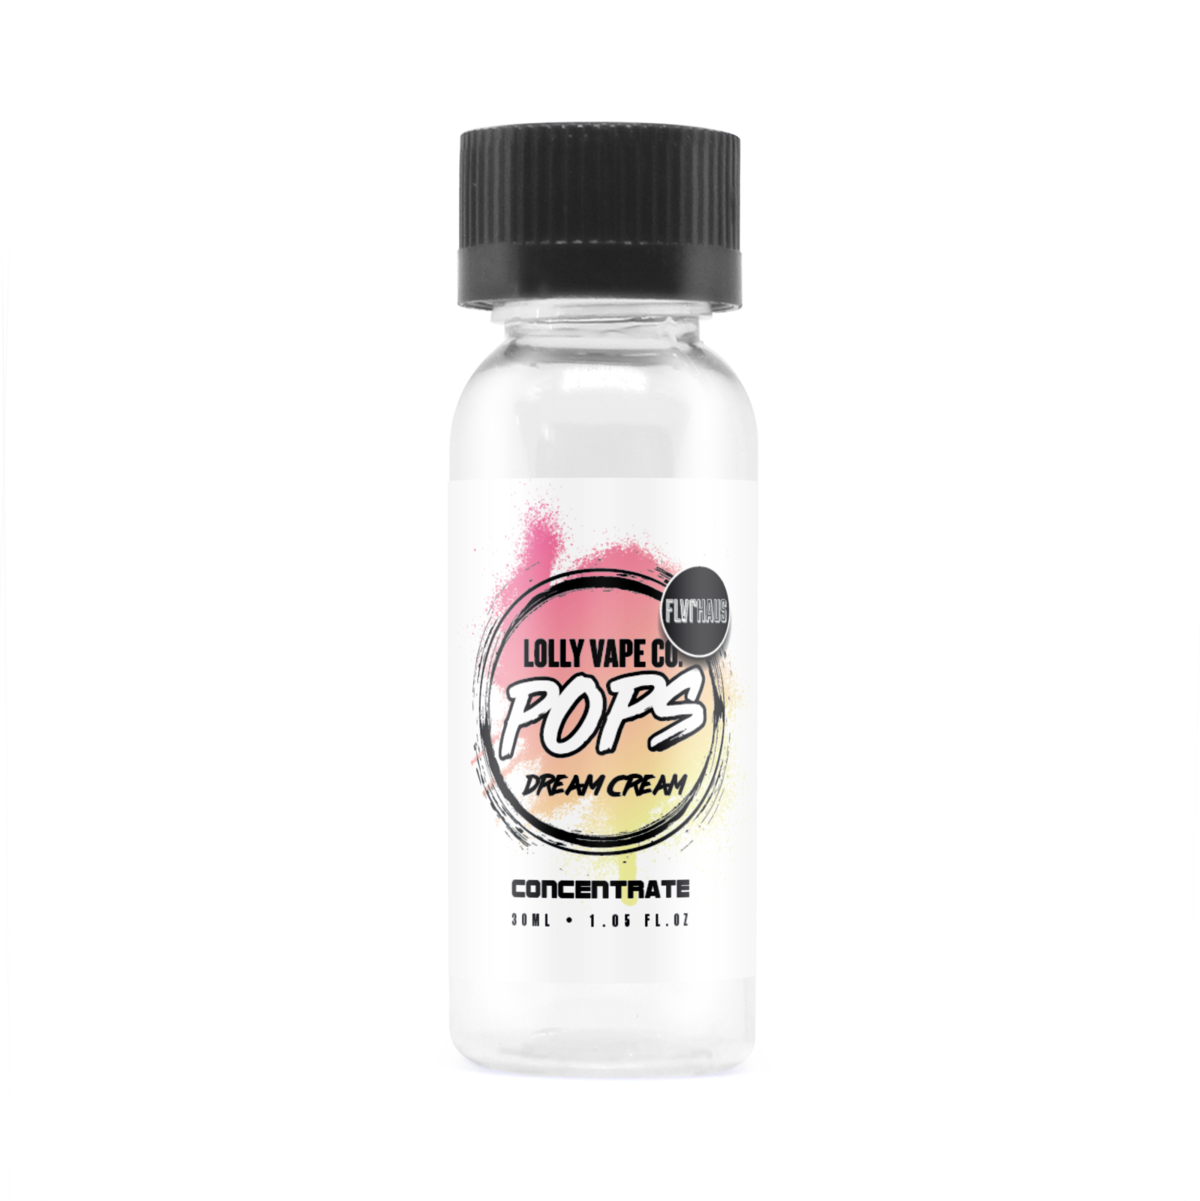 Dream Cream Ice Concentrate E-liquid by Lolly Vape Co 30ml